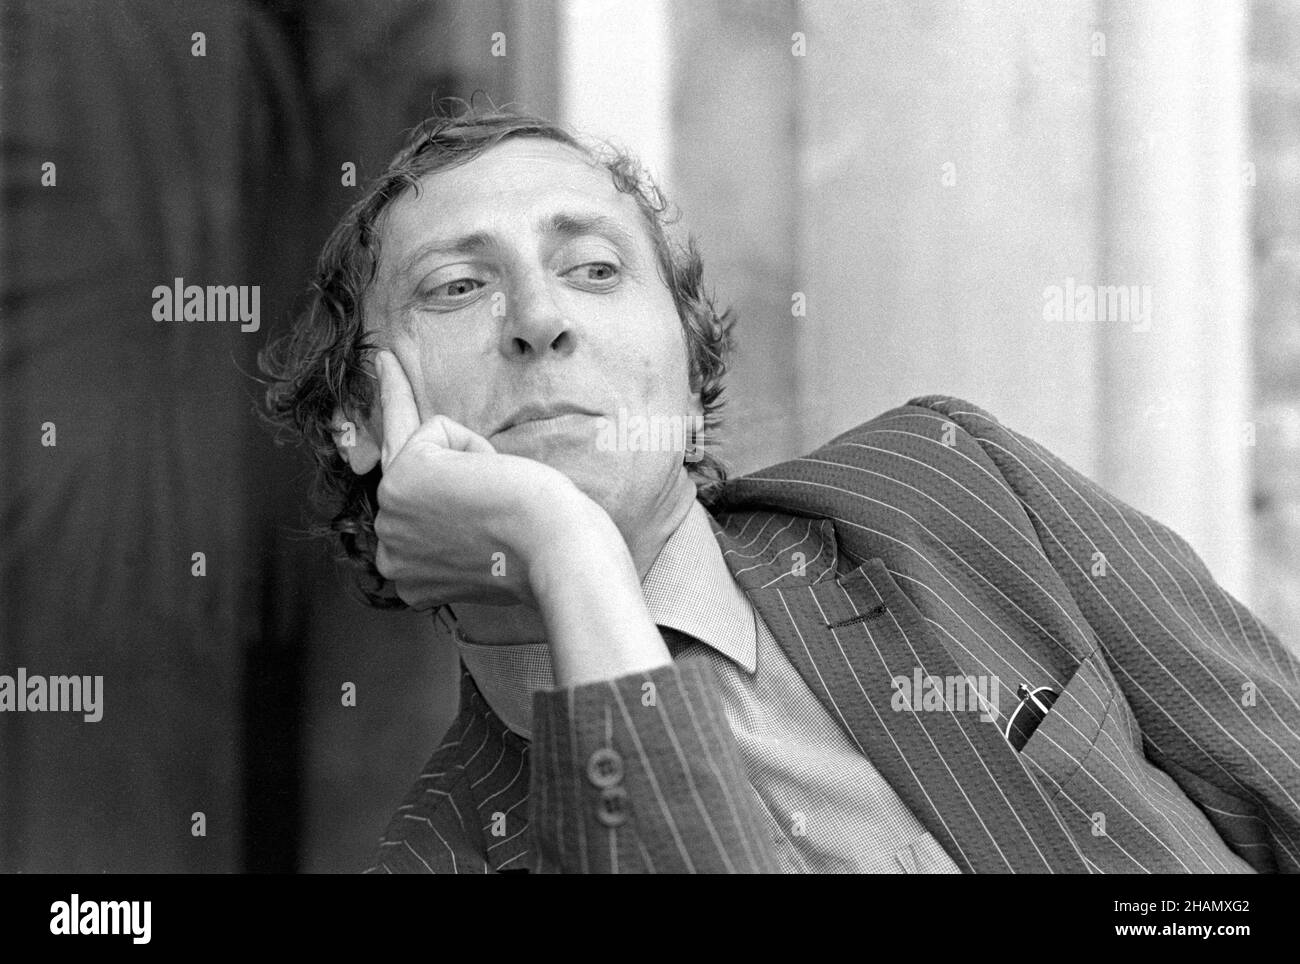 - Festival del Cinema di Venezia 1982; il regista inglese Peter Greenaway   - Venice Film Festival 1982;  the English director Peter Greenaway Stock Photo